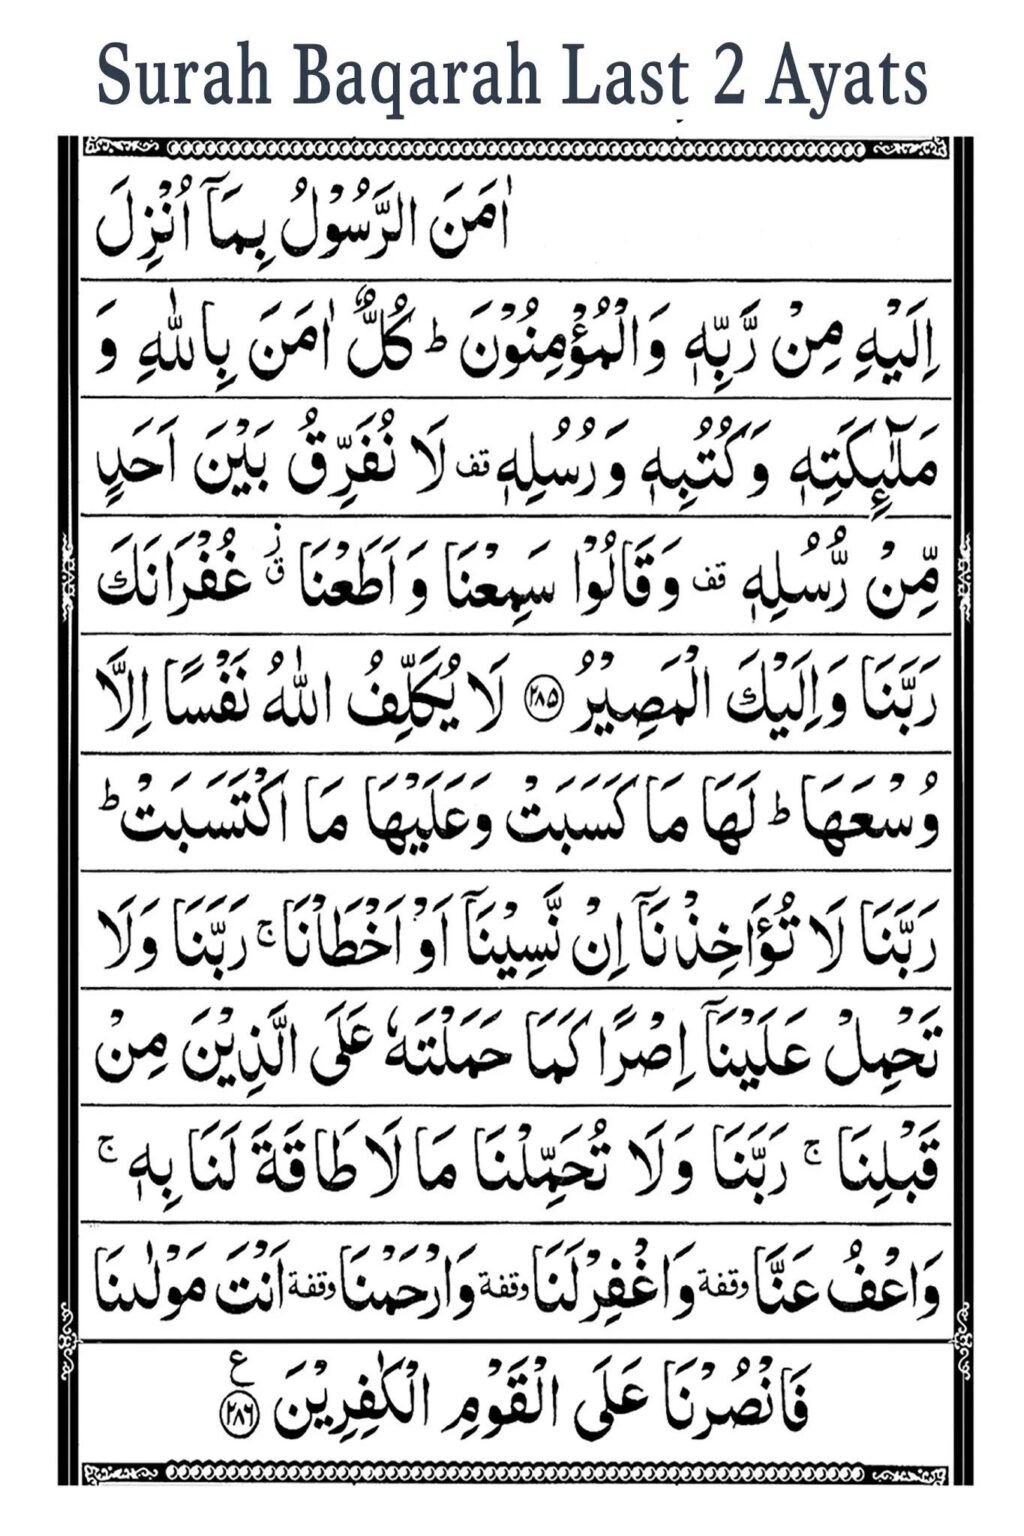 Surah Baqarah Last 2 Ayat | Two Verses of Surah al Baqarah | Surah